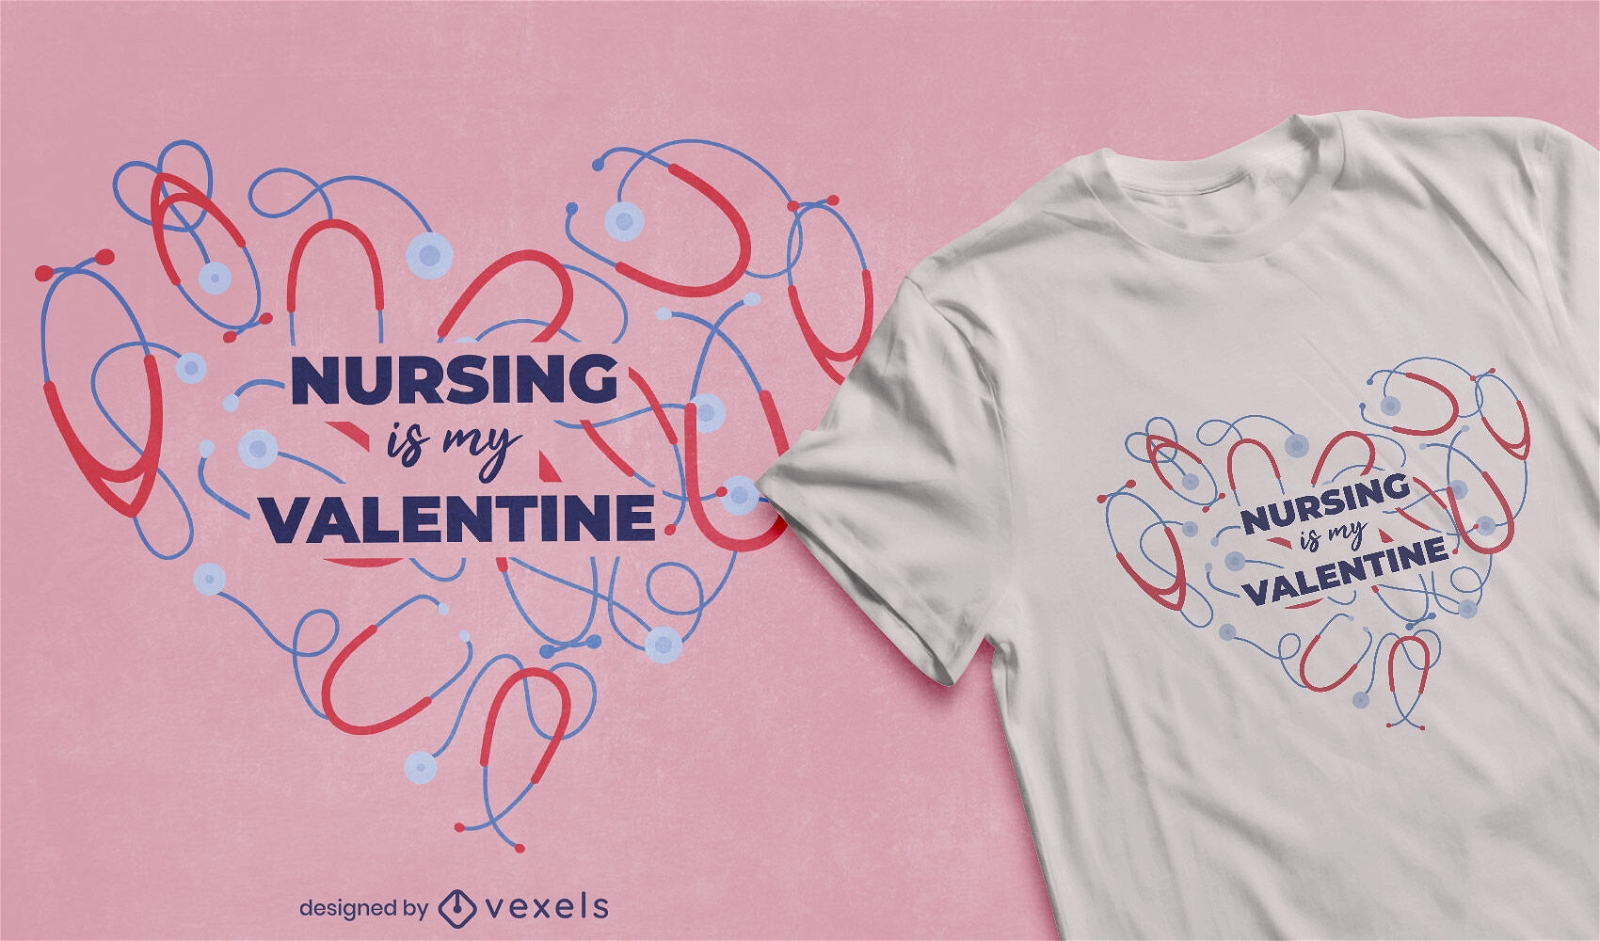 Nursing is my valentine t-shirt design